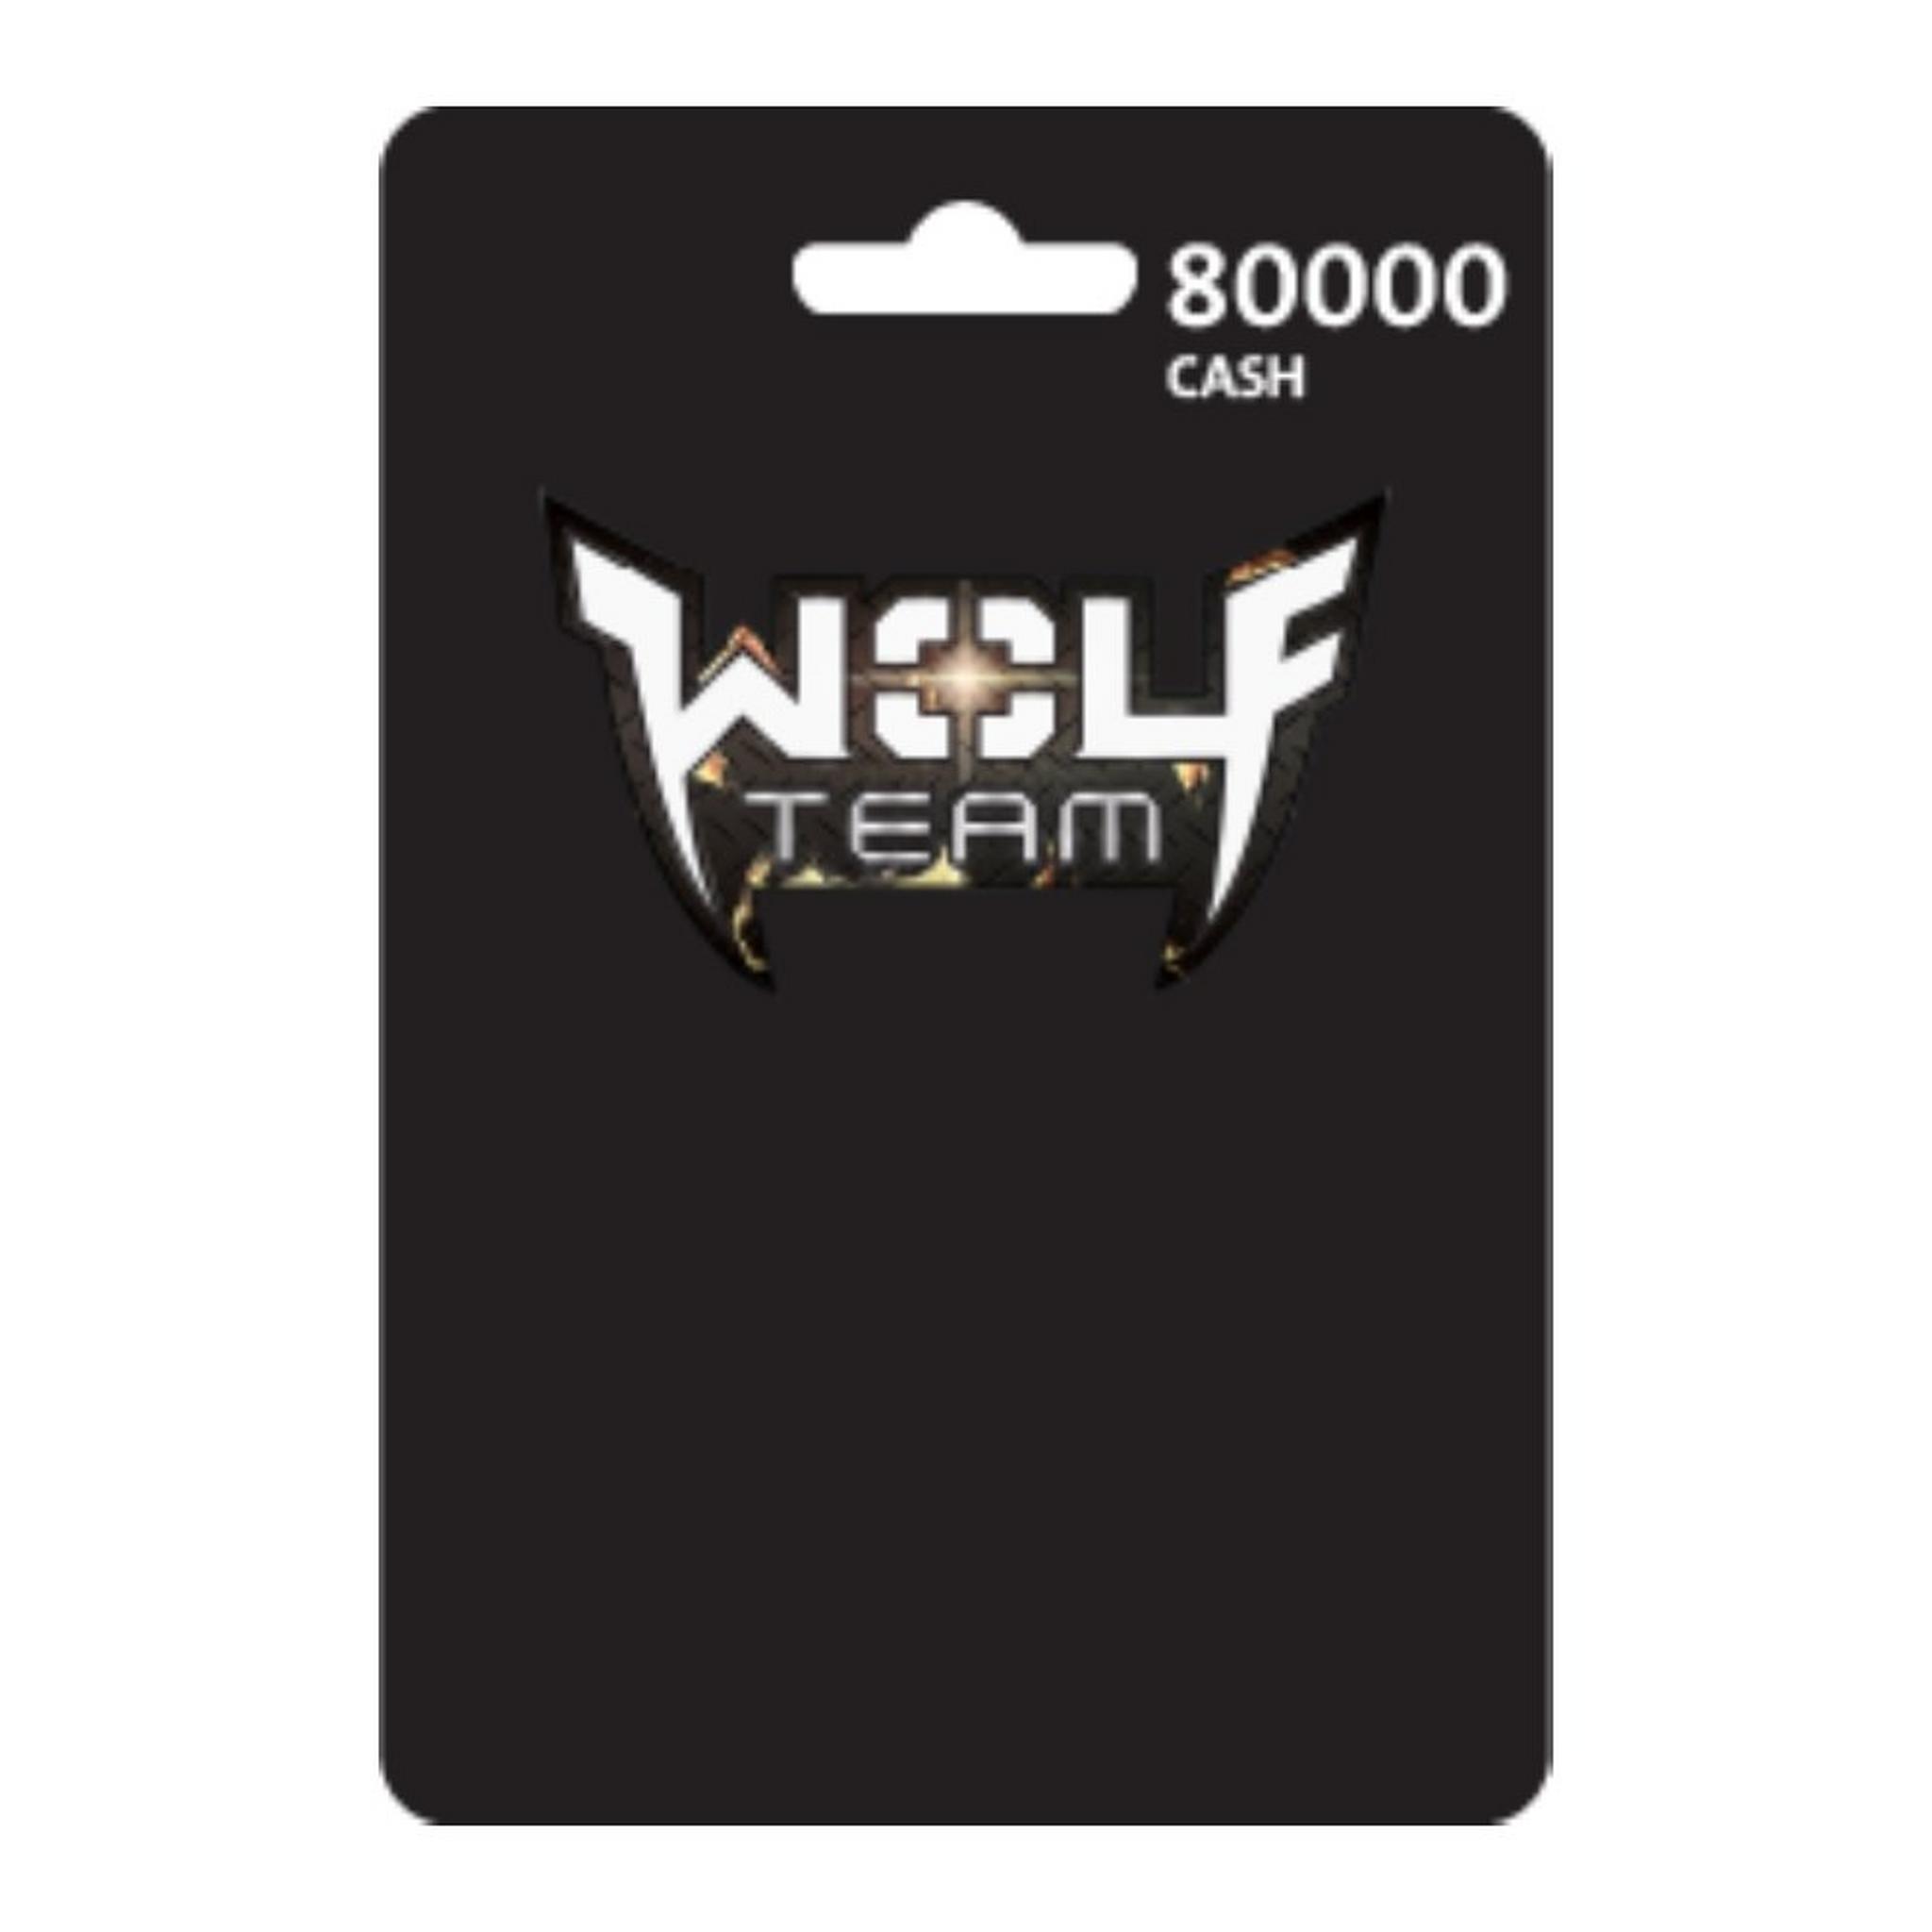 Wolfteam Mena 80000 Cash